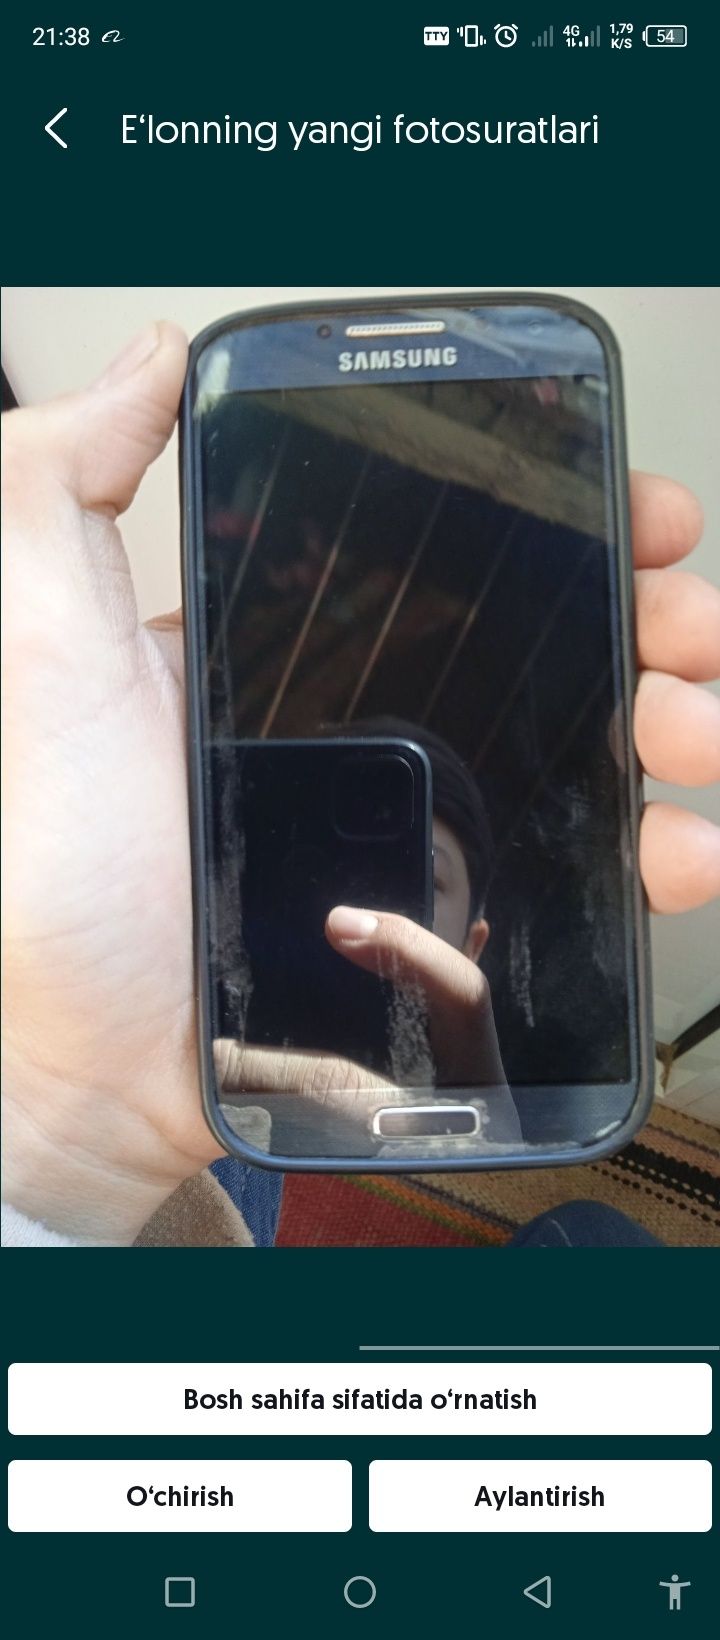 Samsung galaxy S4 zor telefon faqat abyomga iphone 5dan balandiga